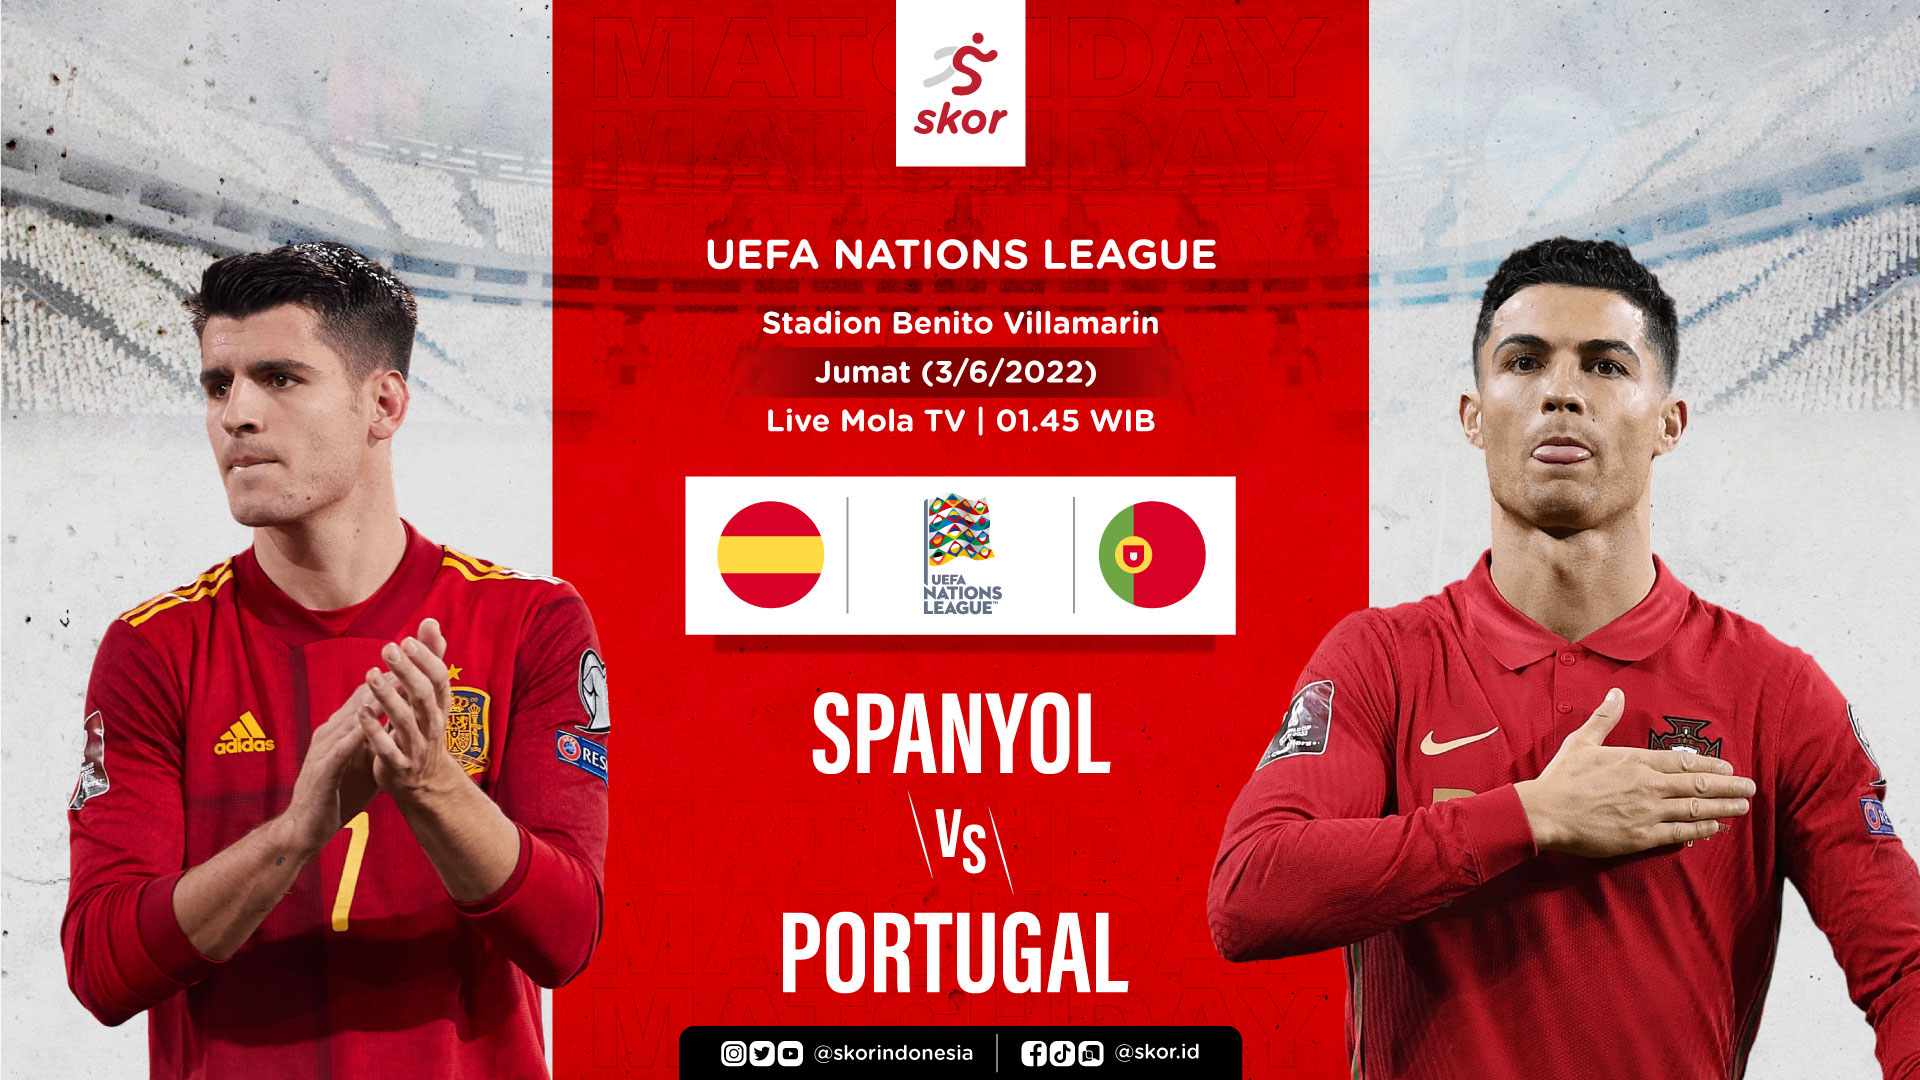 Spanyol vs Portugal: Prediksi dan Link Live Streaming